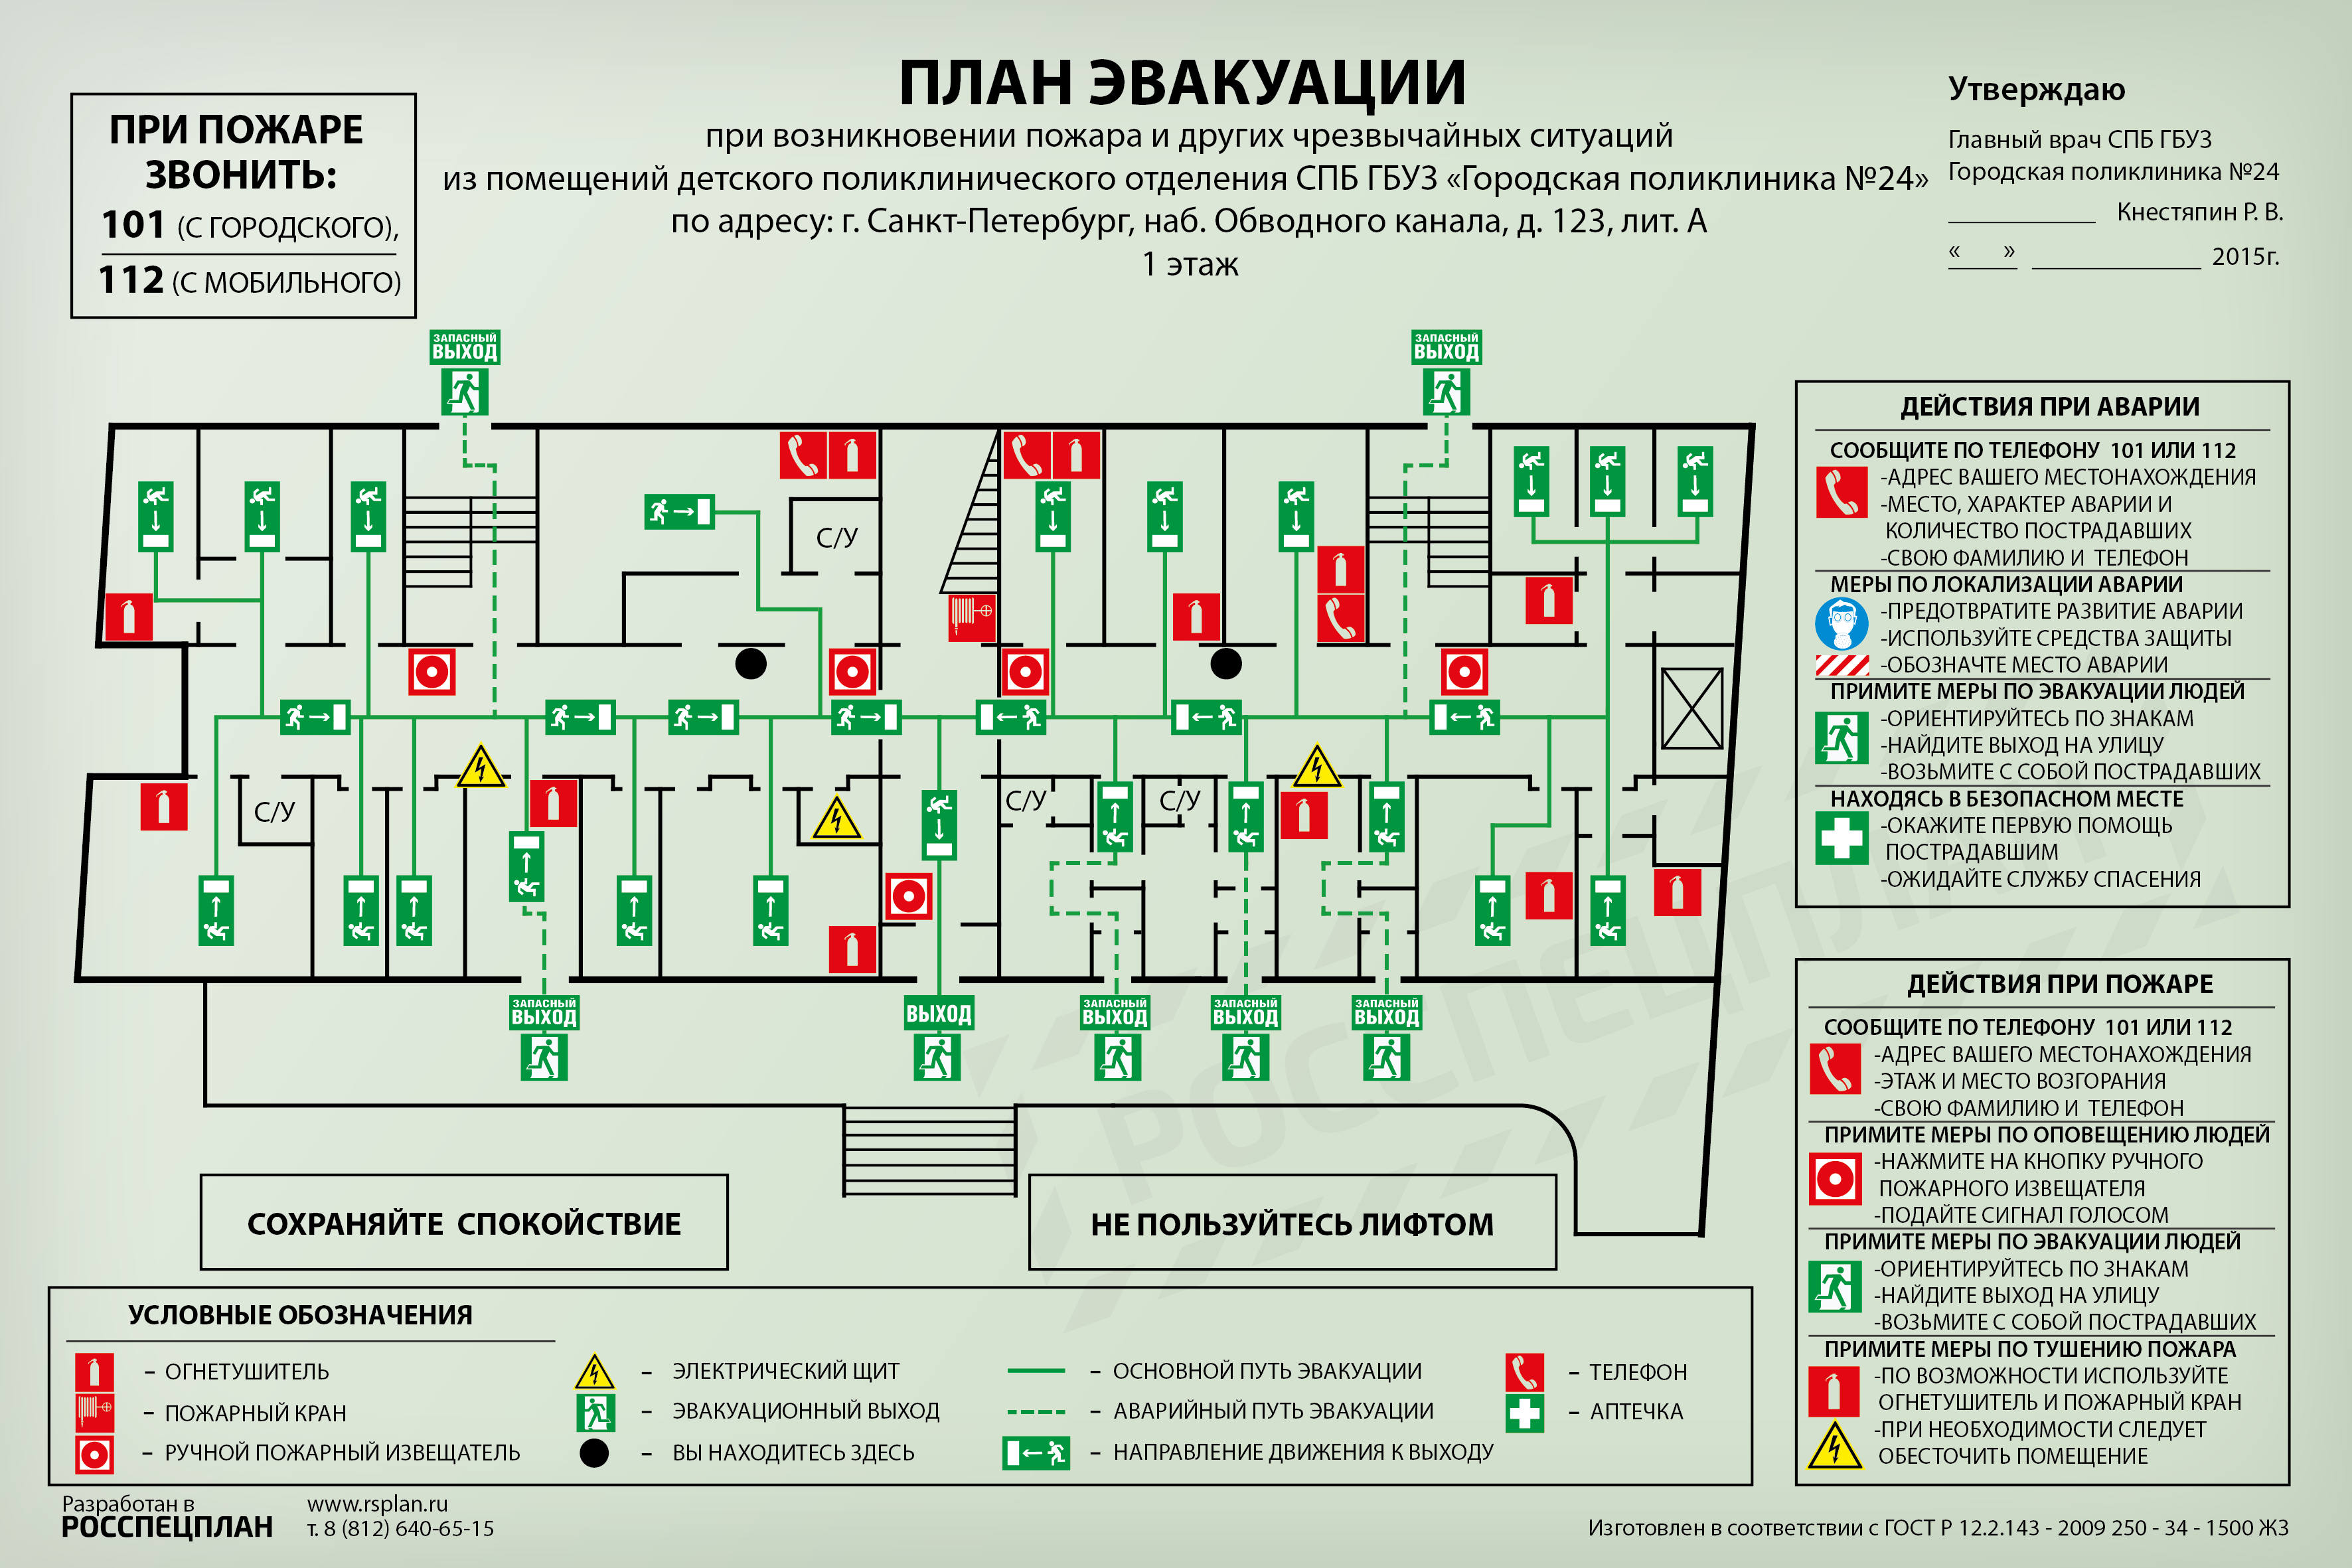 Городская больница номер 1 Барнаул план эвакуации